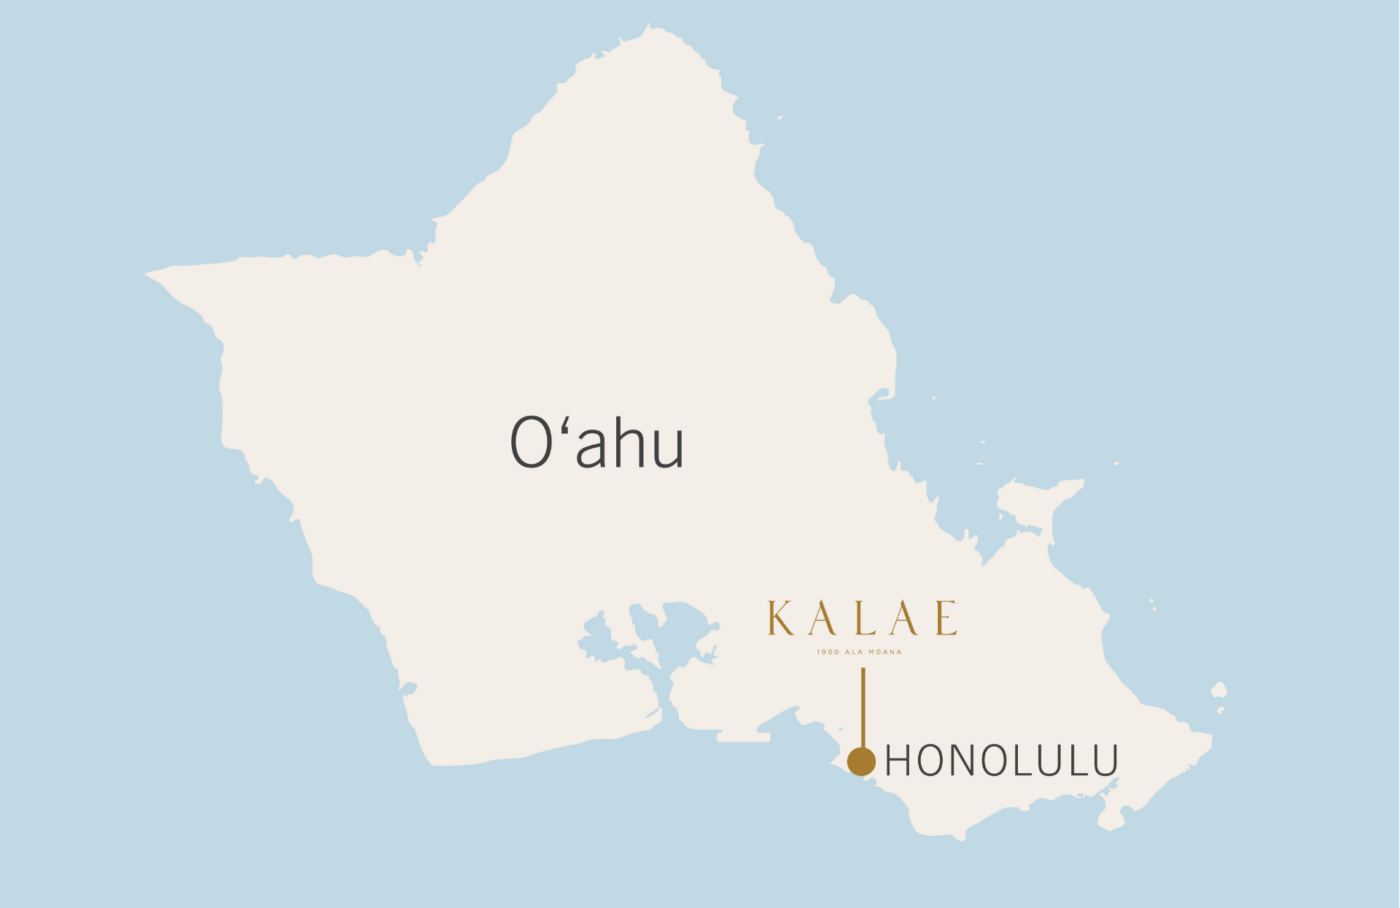 Kalae와 Honolulu가있는 오아후지도가 외칩니다.